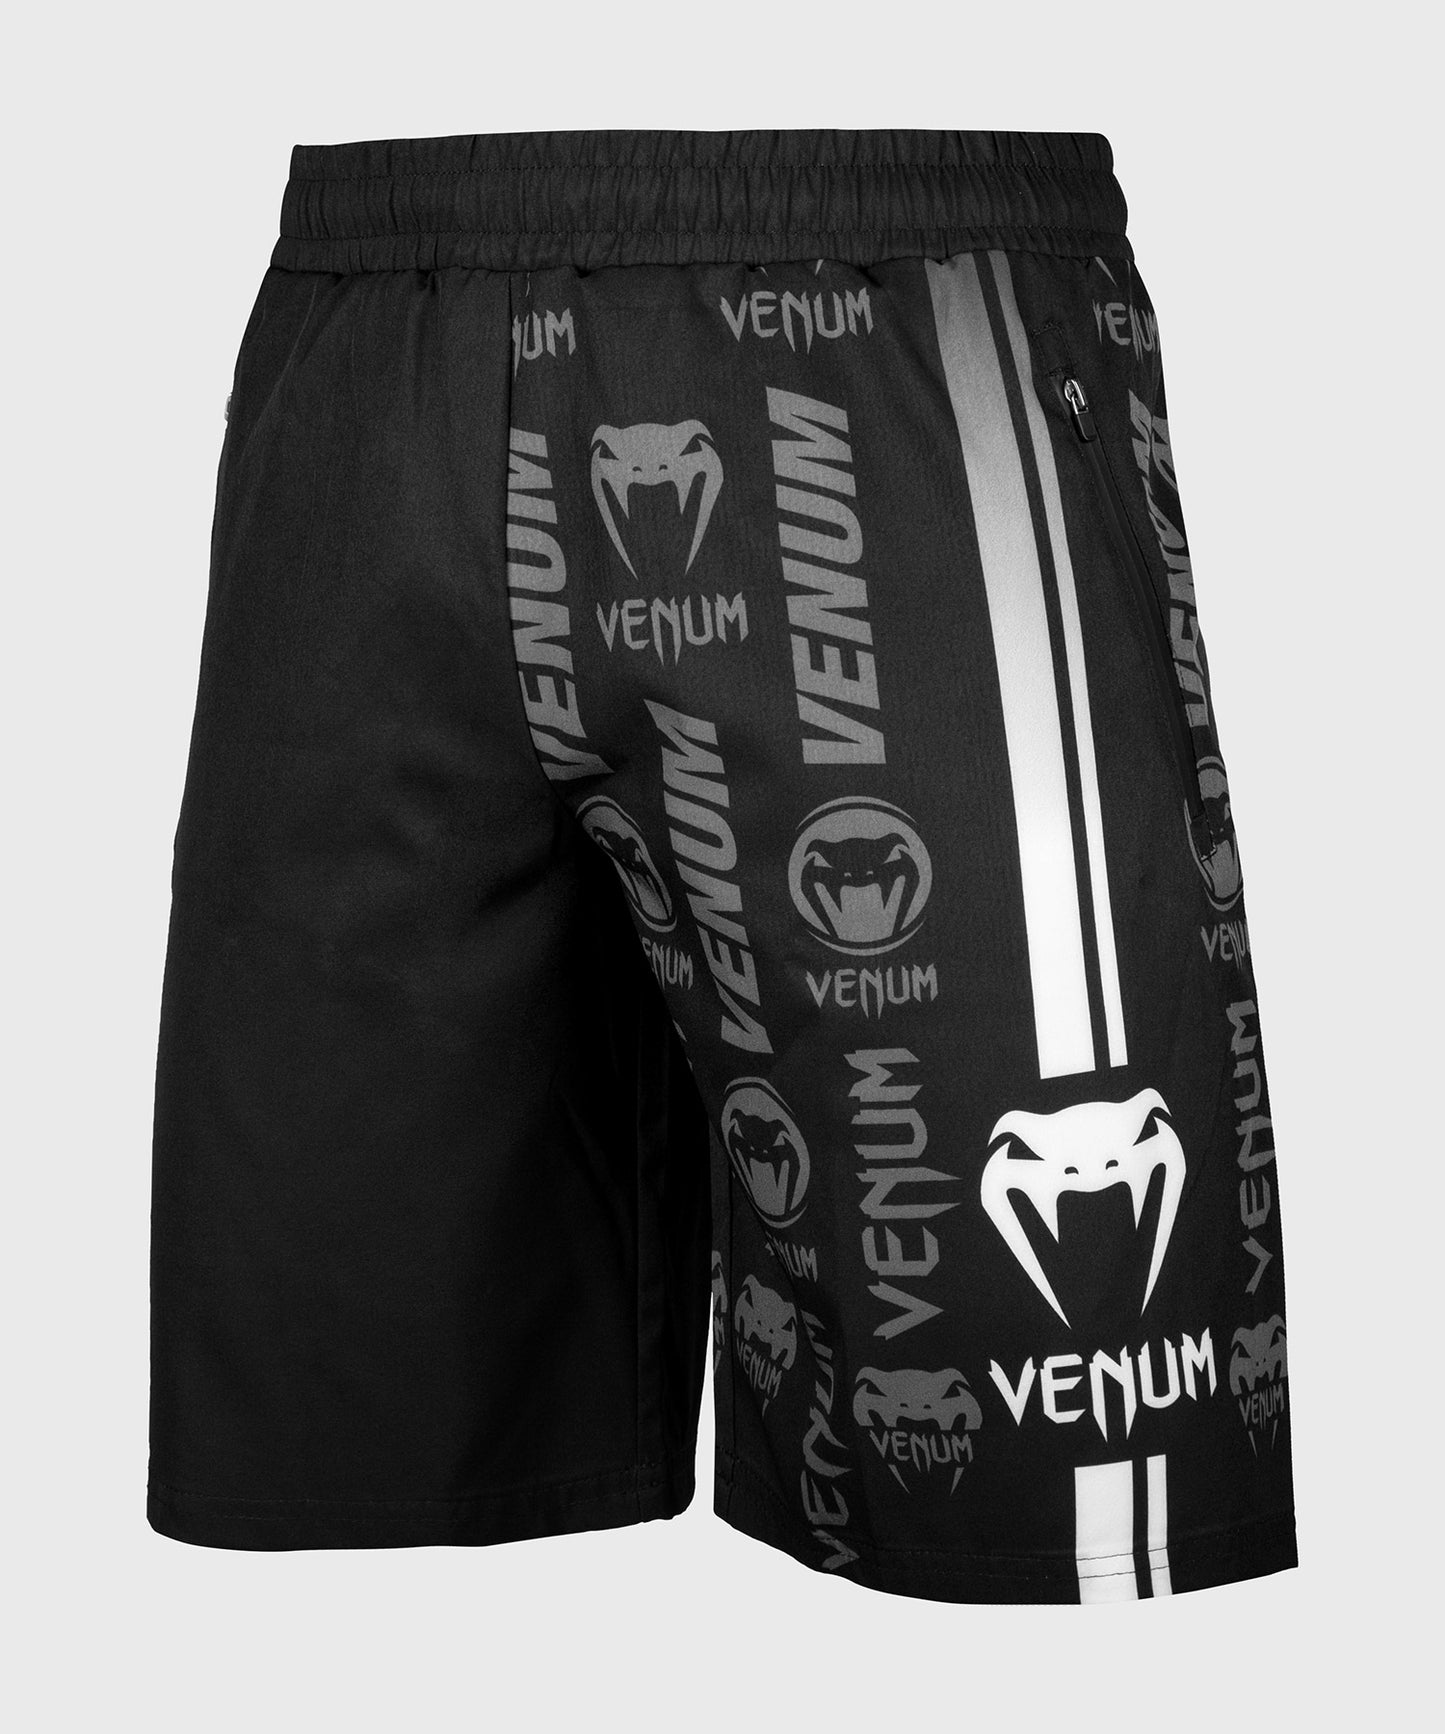 Pantalones Cortos Fitness Venum Logos  - Negro/Blanco